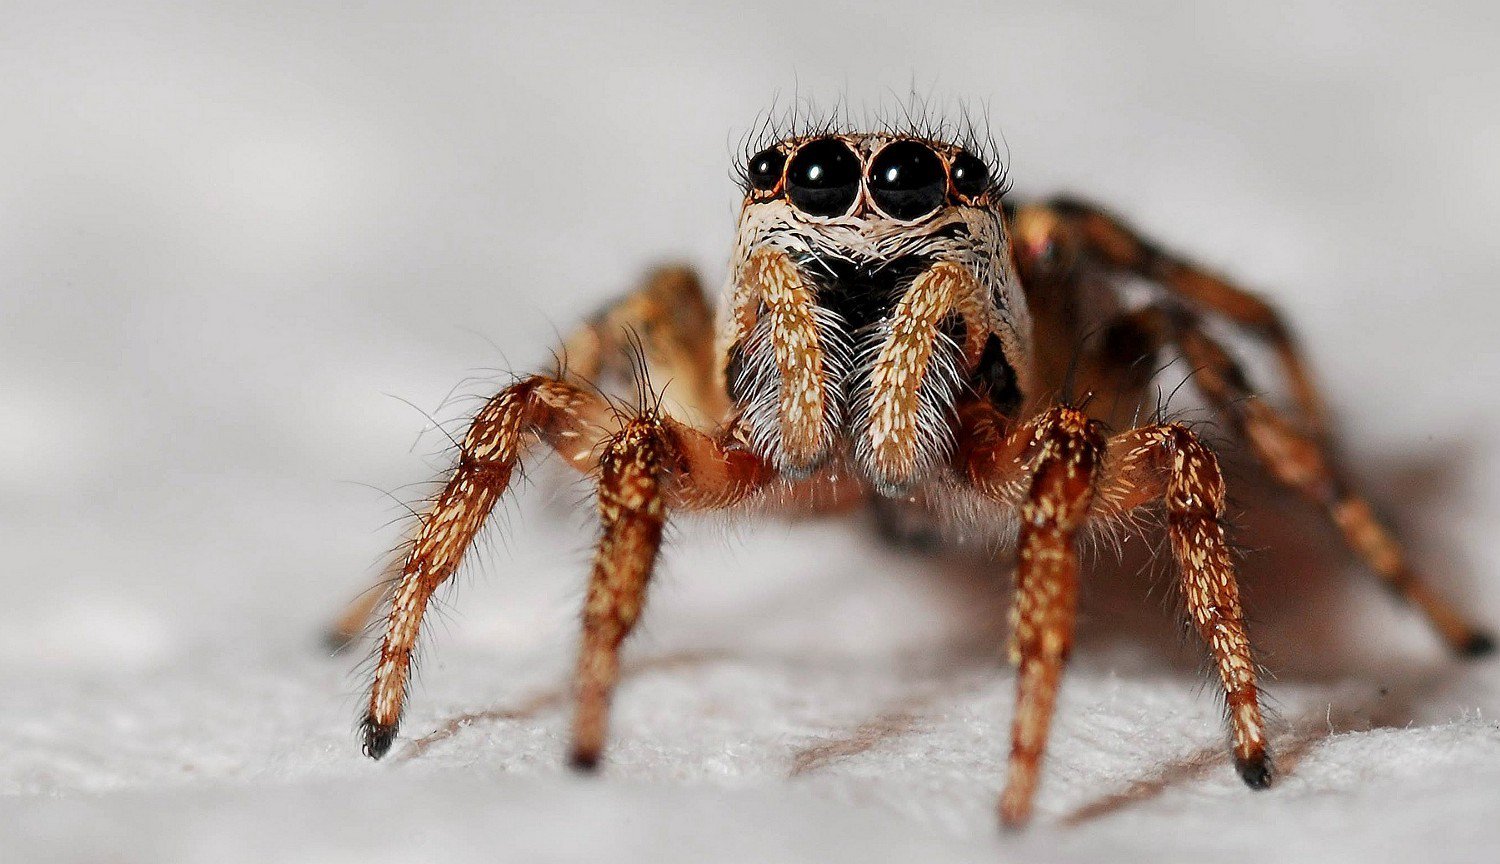 Le fossile d'araignée est capable de briller les yeux, même après des millions d'années